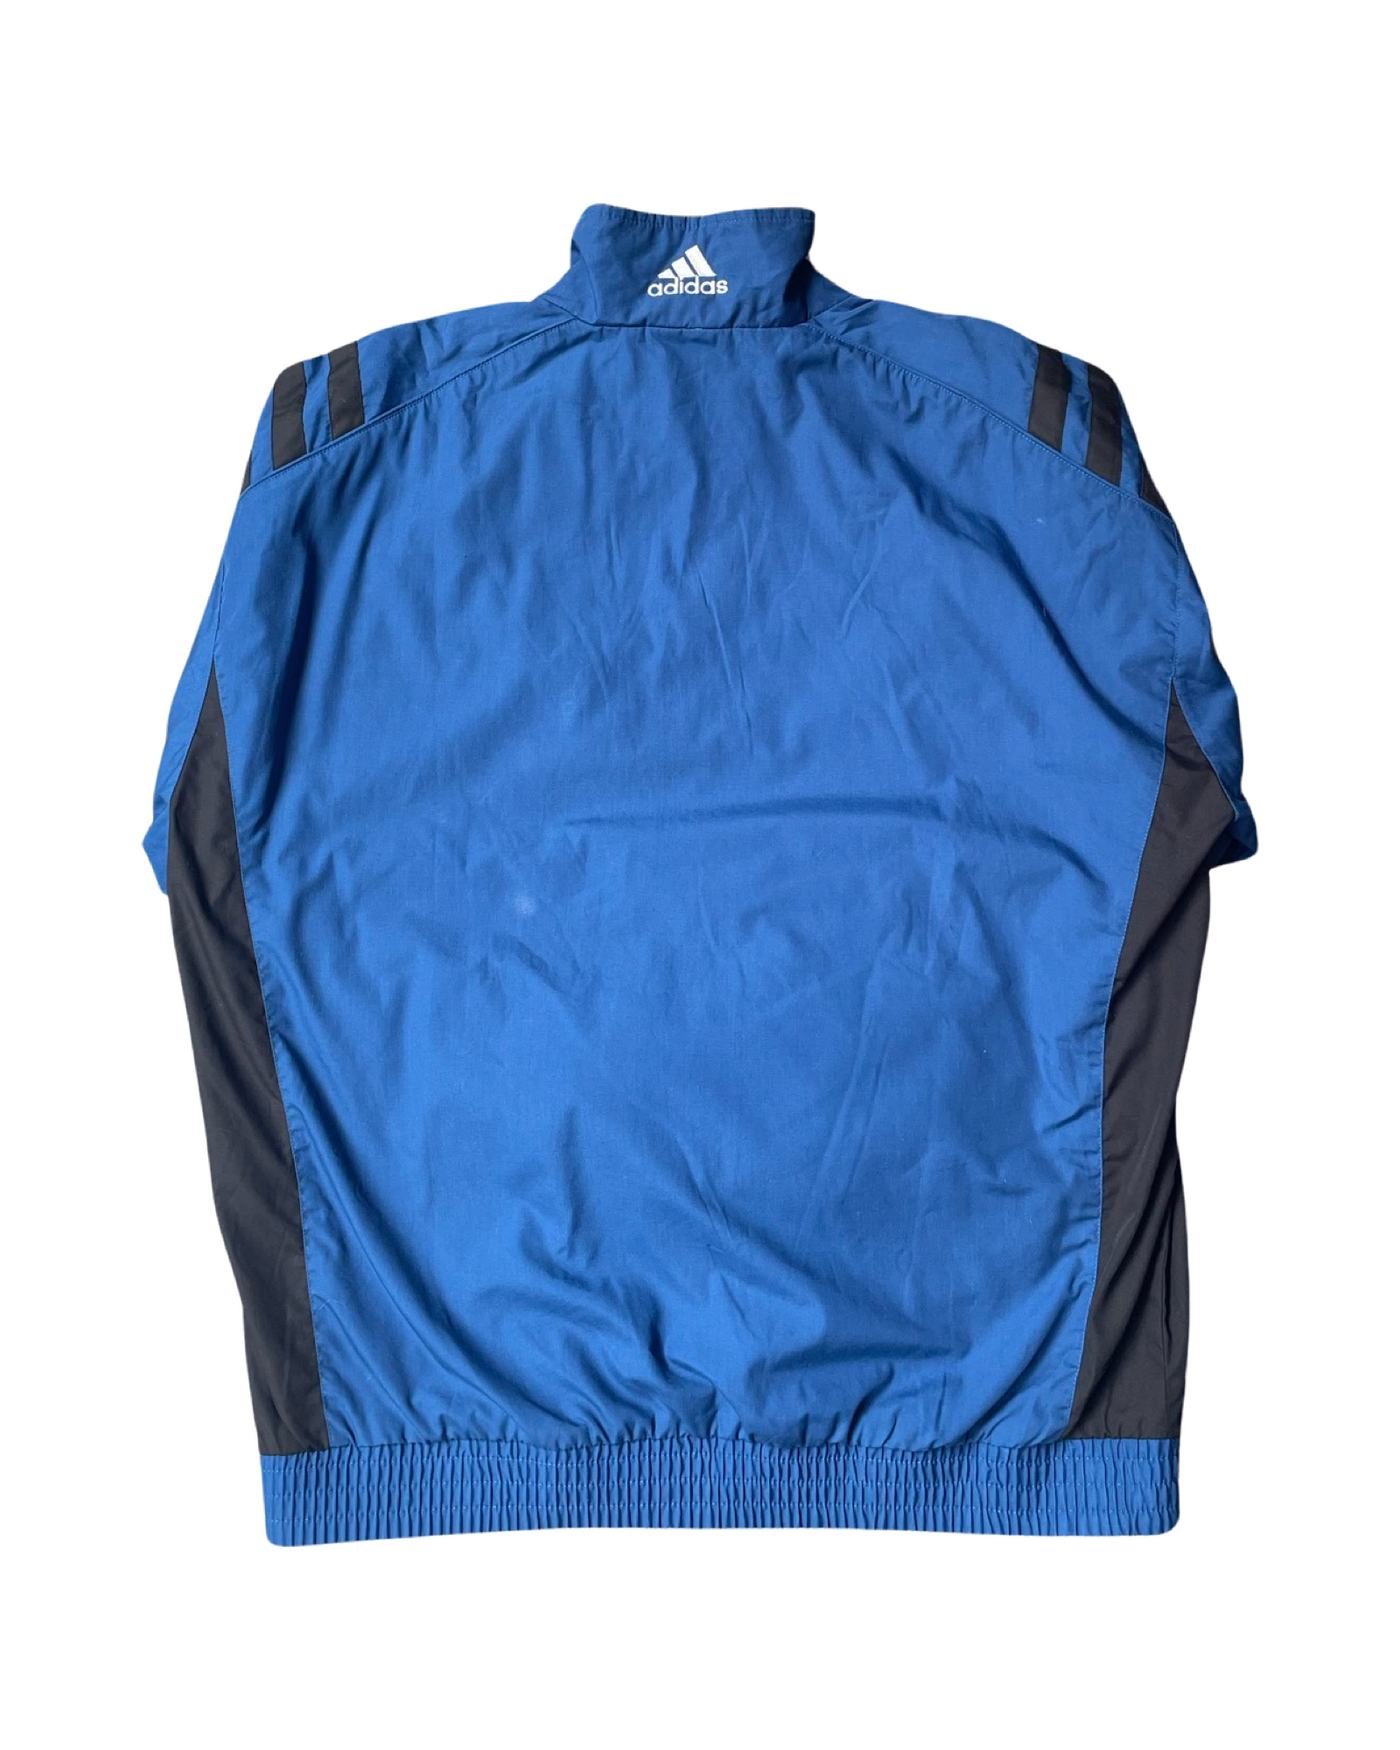 Vintage 90’s Adidas Parachute Jacket